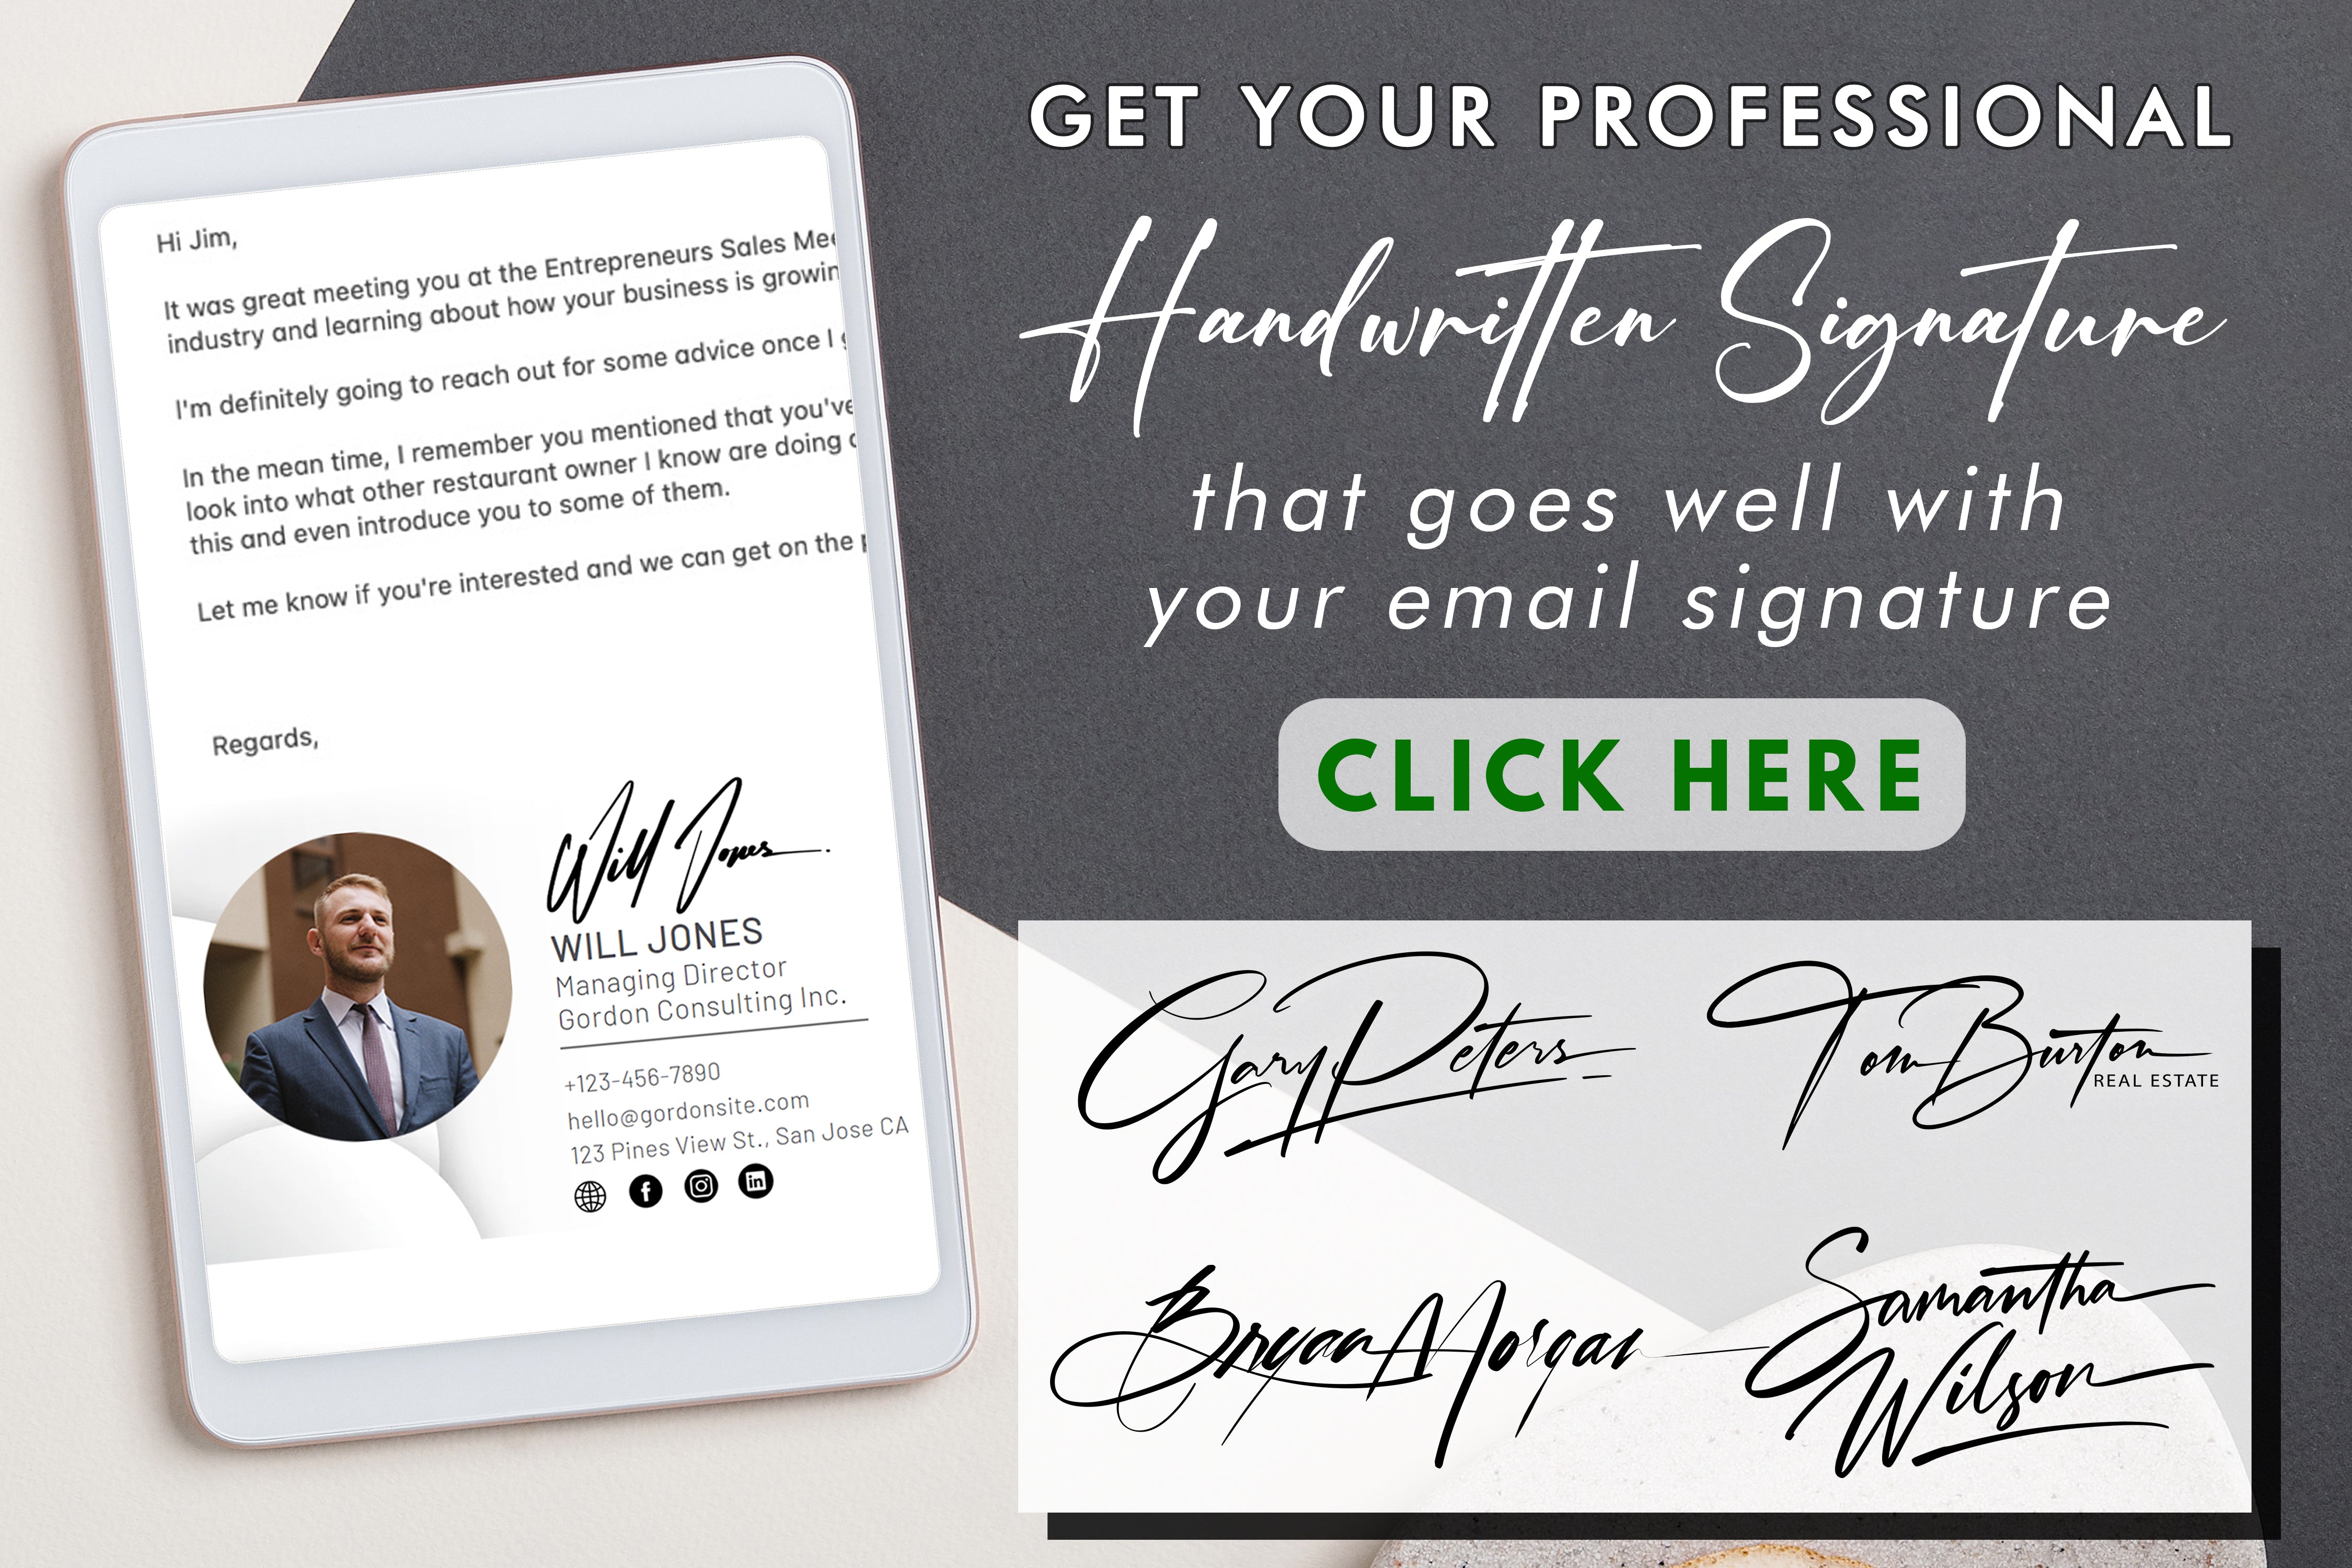 Apprenez à tirer le meilleur parti de votre bloc-signature et améliorez l'expérience de signature de vos documents en y apportant efficacité et touche personnelle.